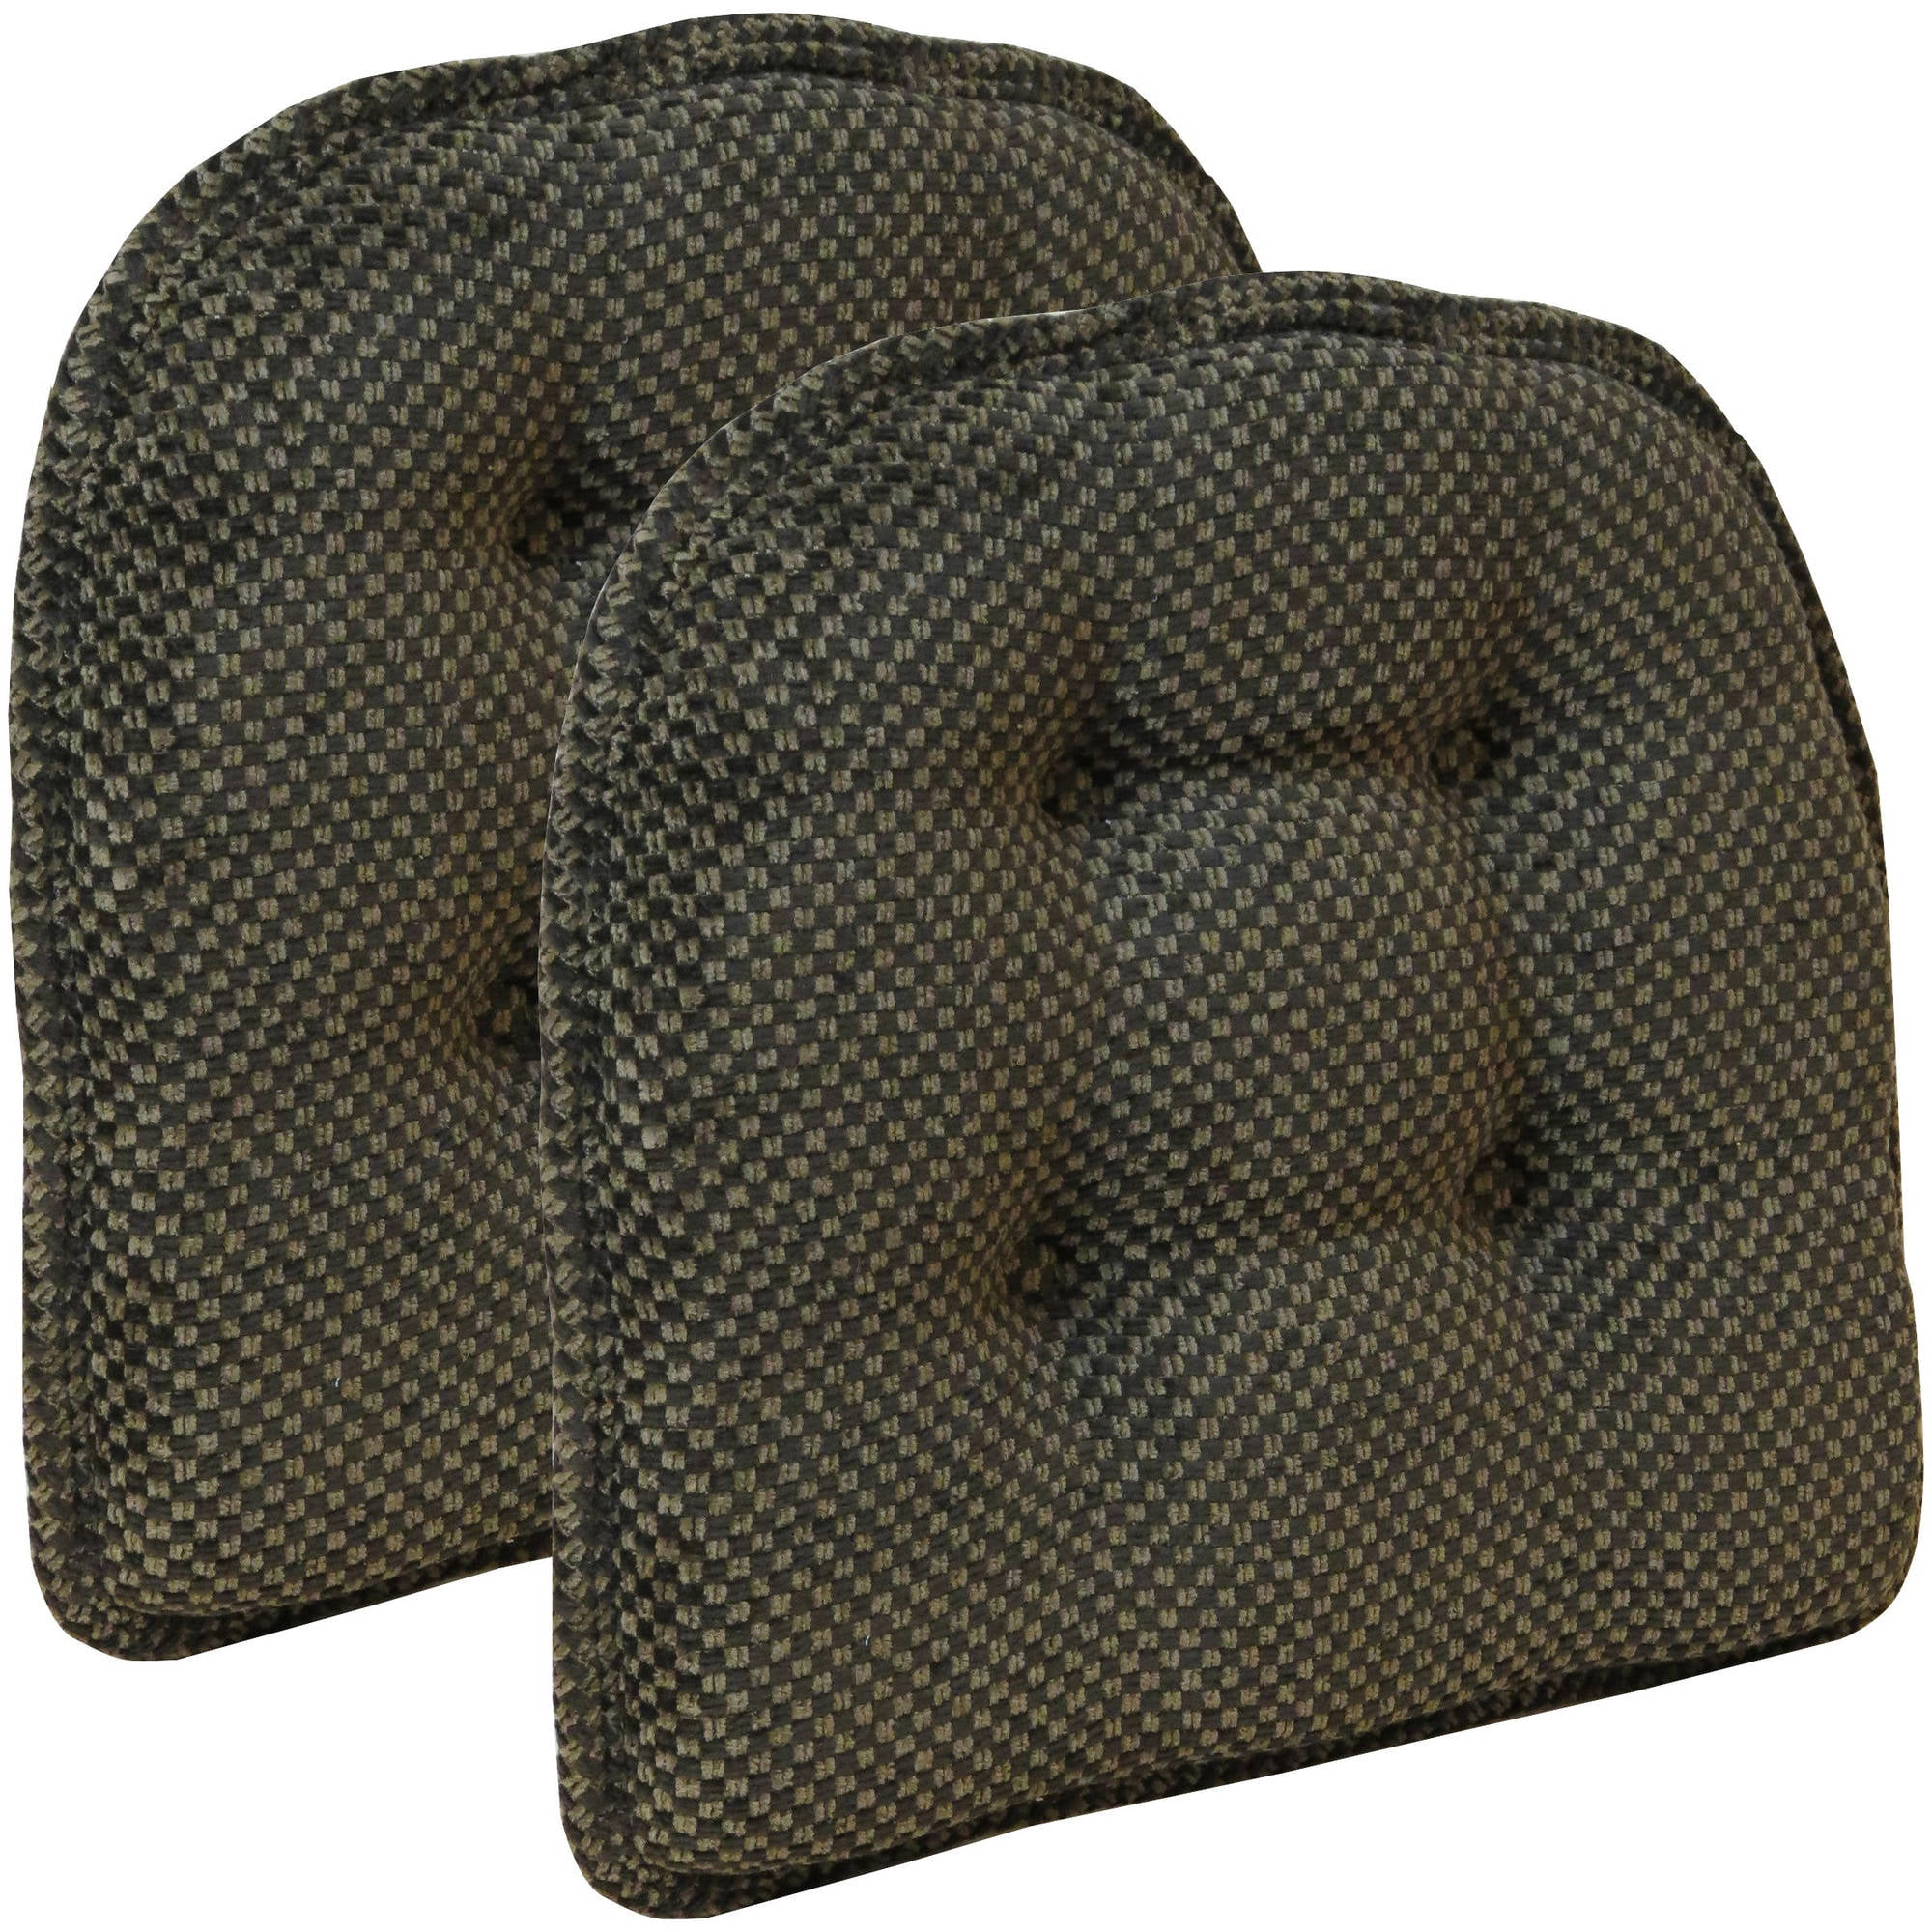 Gripper Non Slip 15" x 16" Textured Tufted Chair Cushions